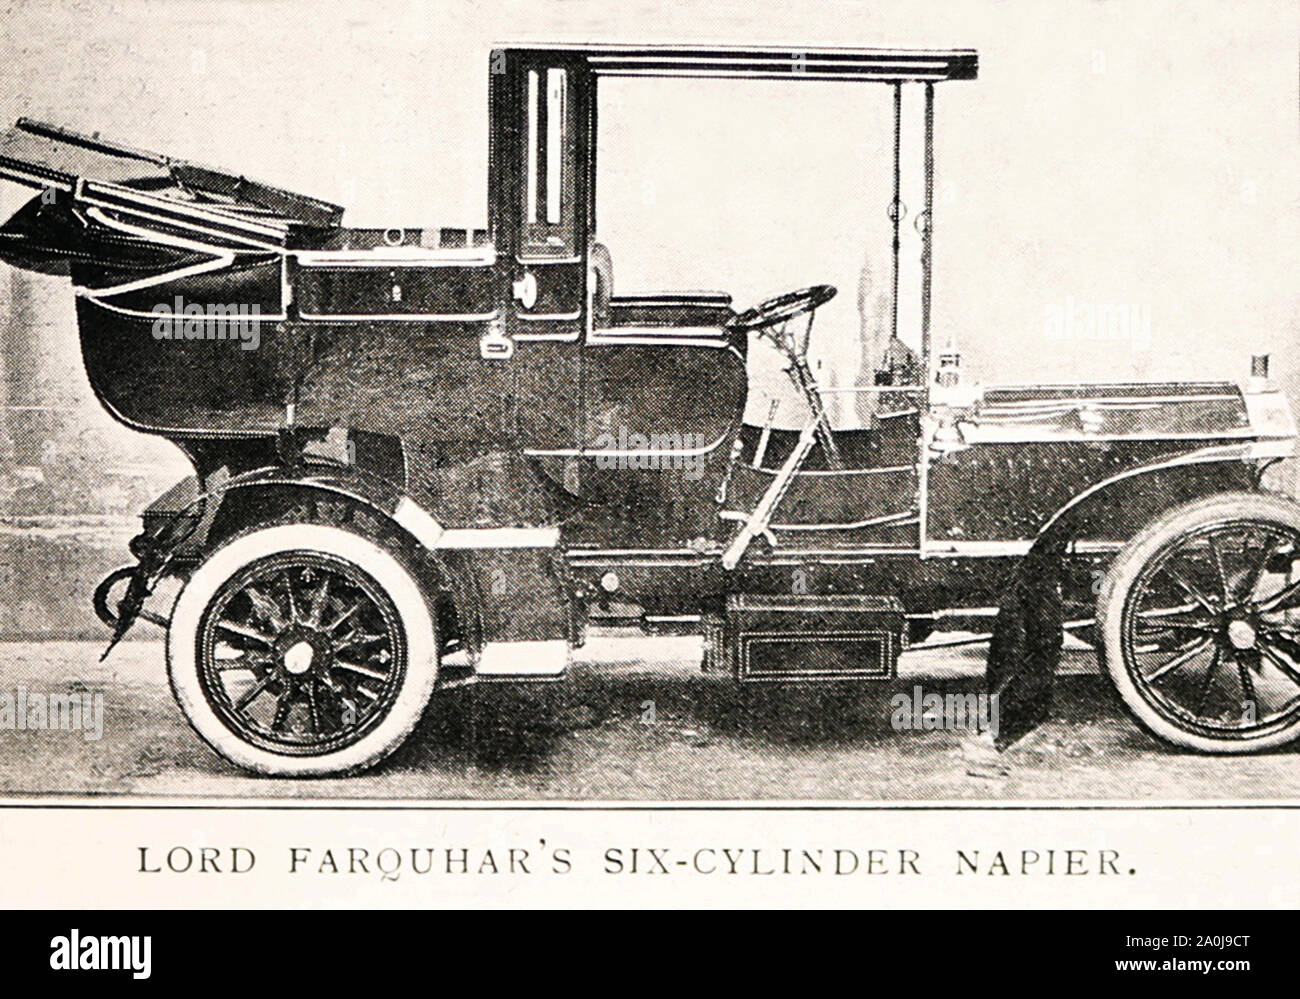 Vétéran de six cylindres voiture Napier, début des années 1900 Banque D'Images